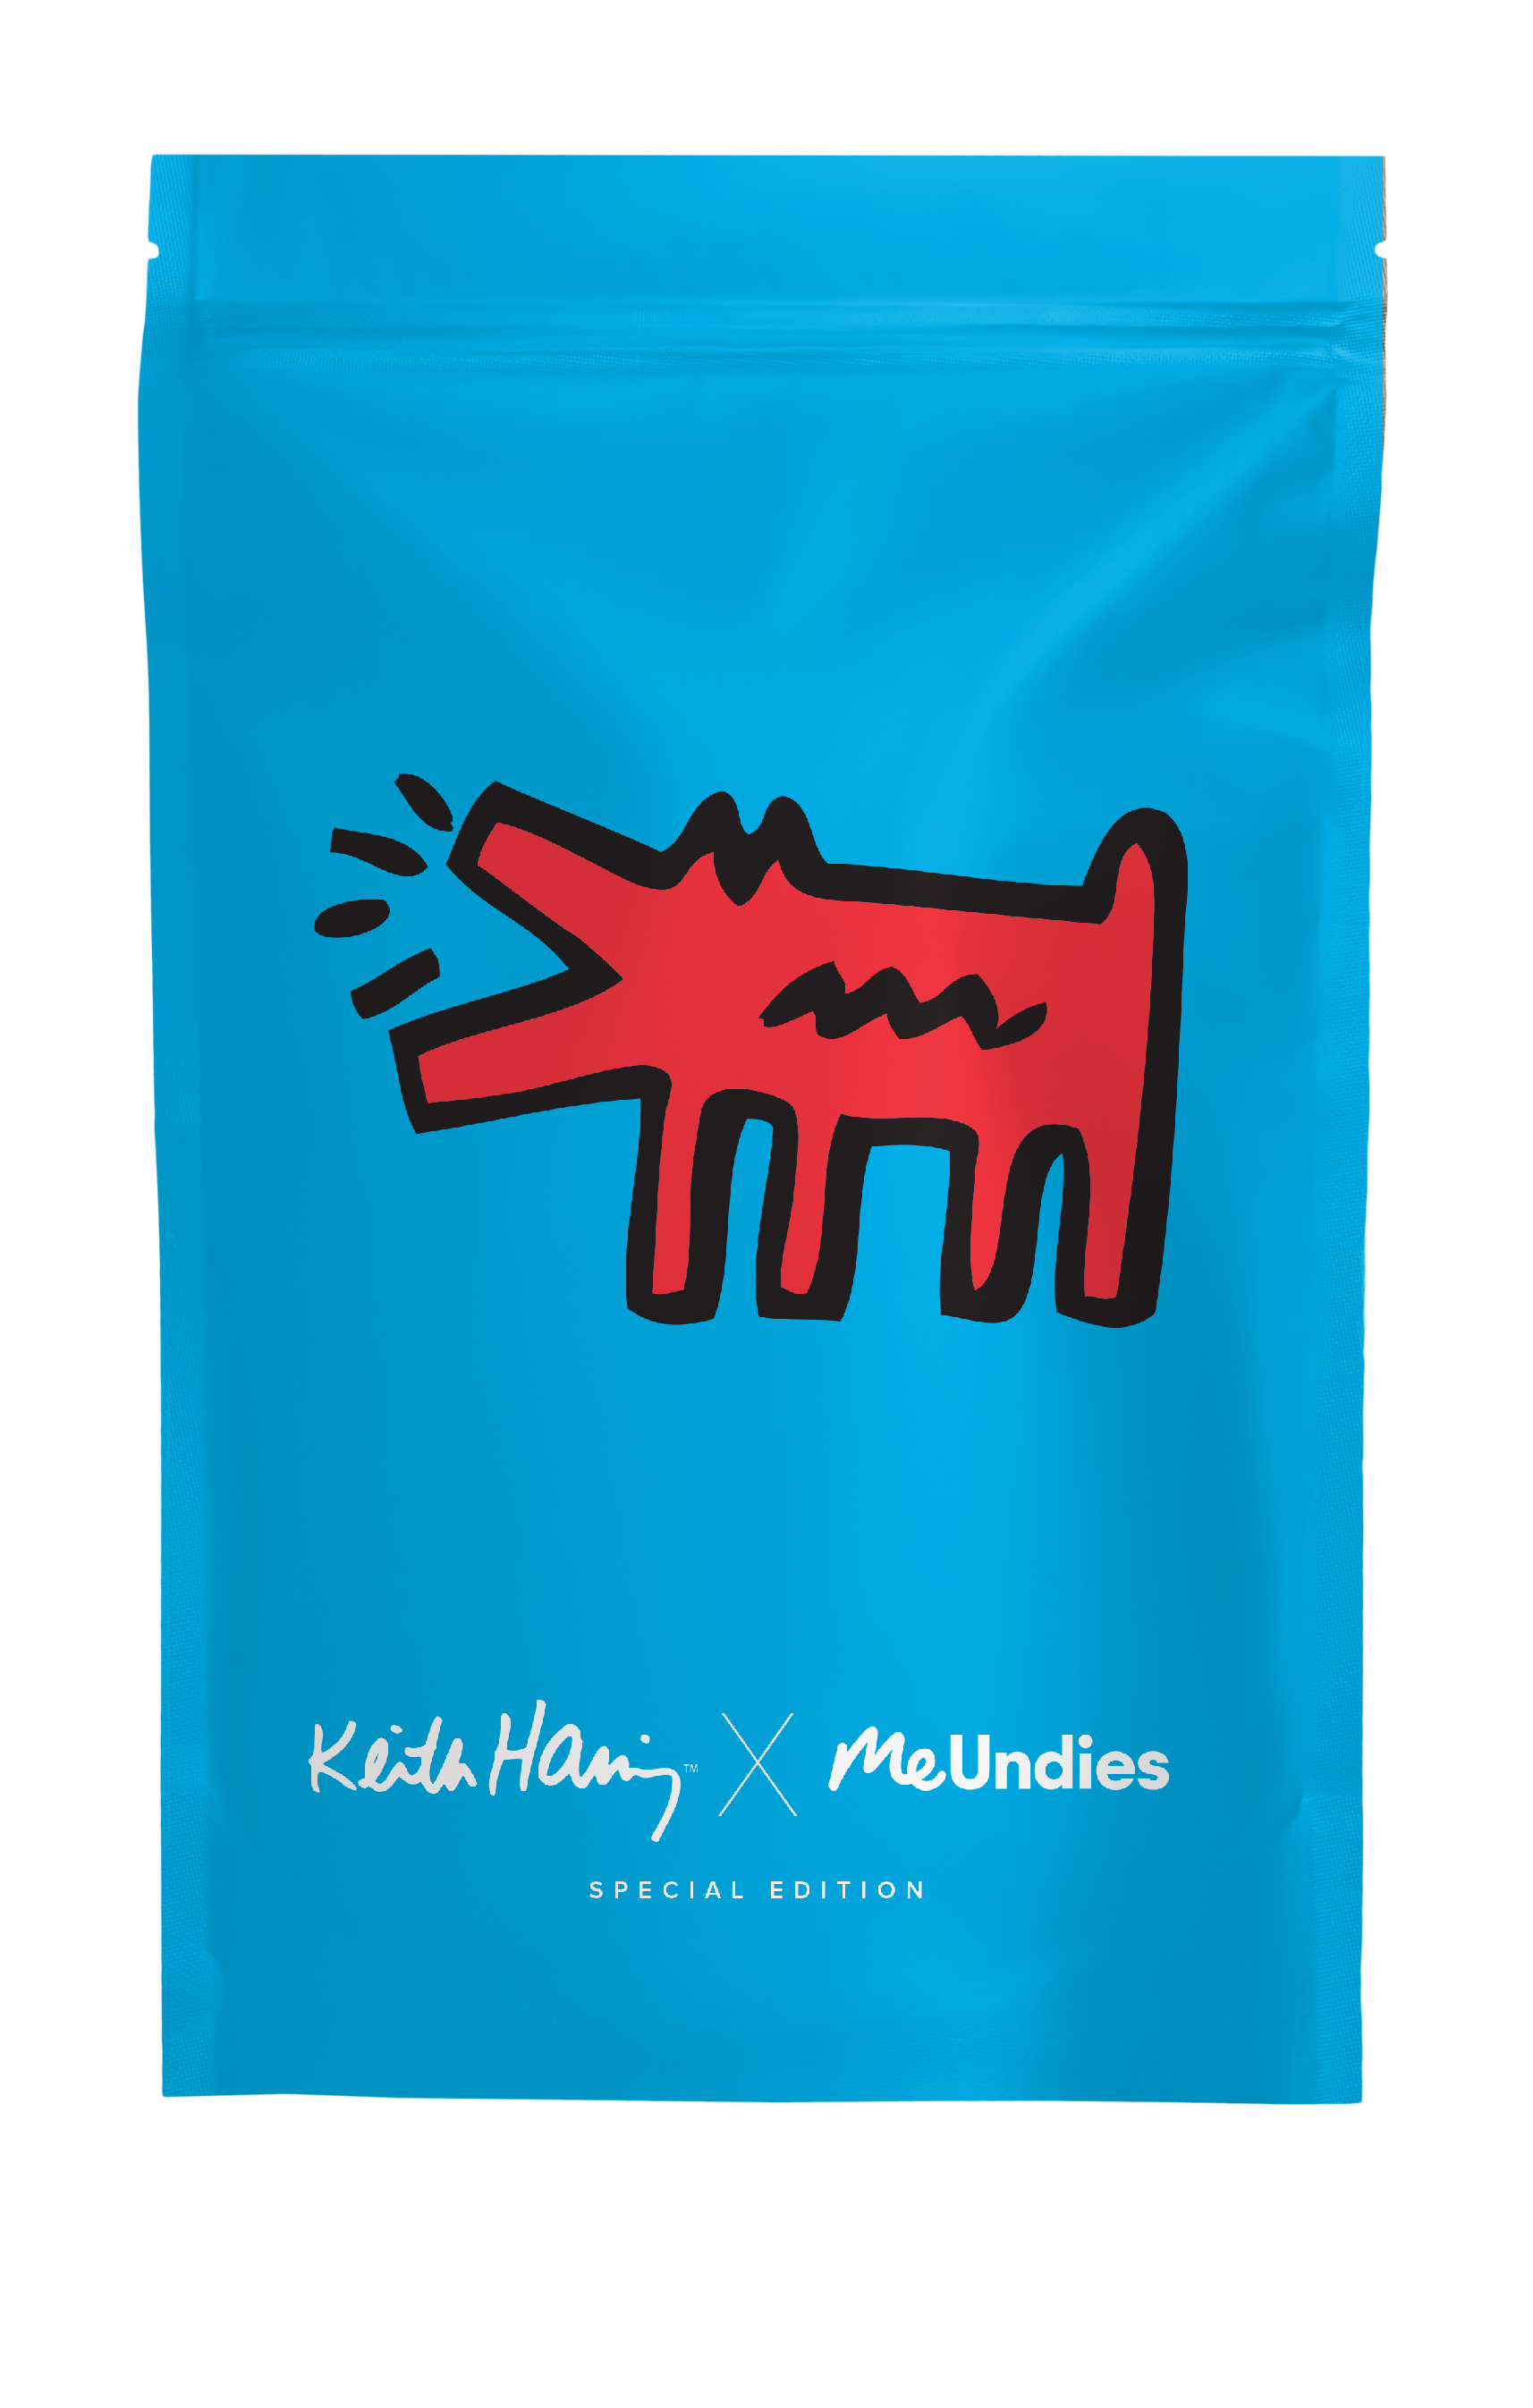 Keith Haring X MeUndies - Sheerin Vatankhah